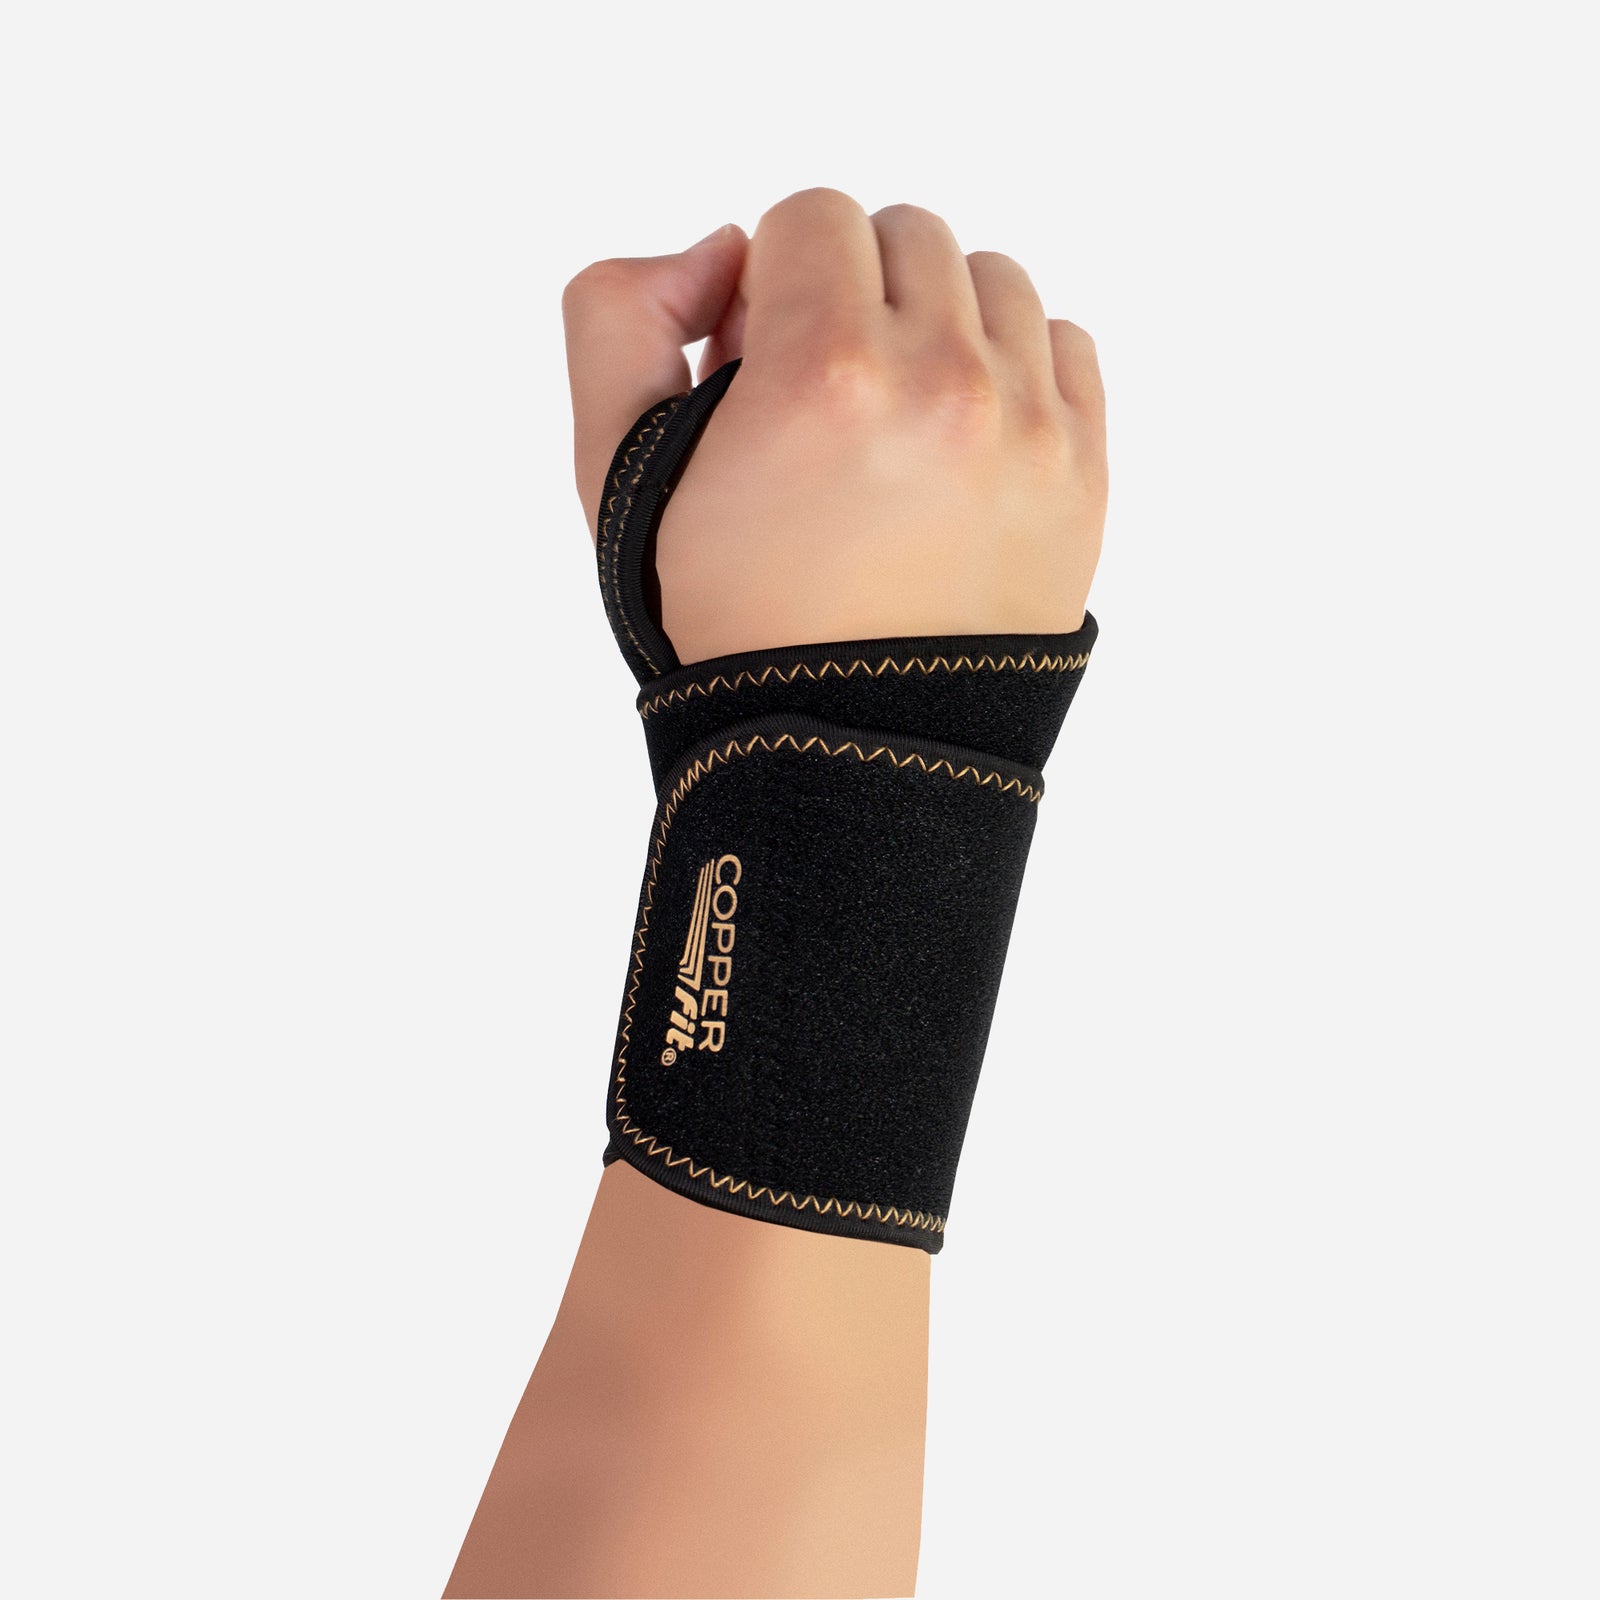 Copper Joe® Copper-Infused Full-Finger Arthritis Gloves - Pick